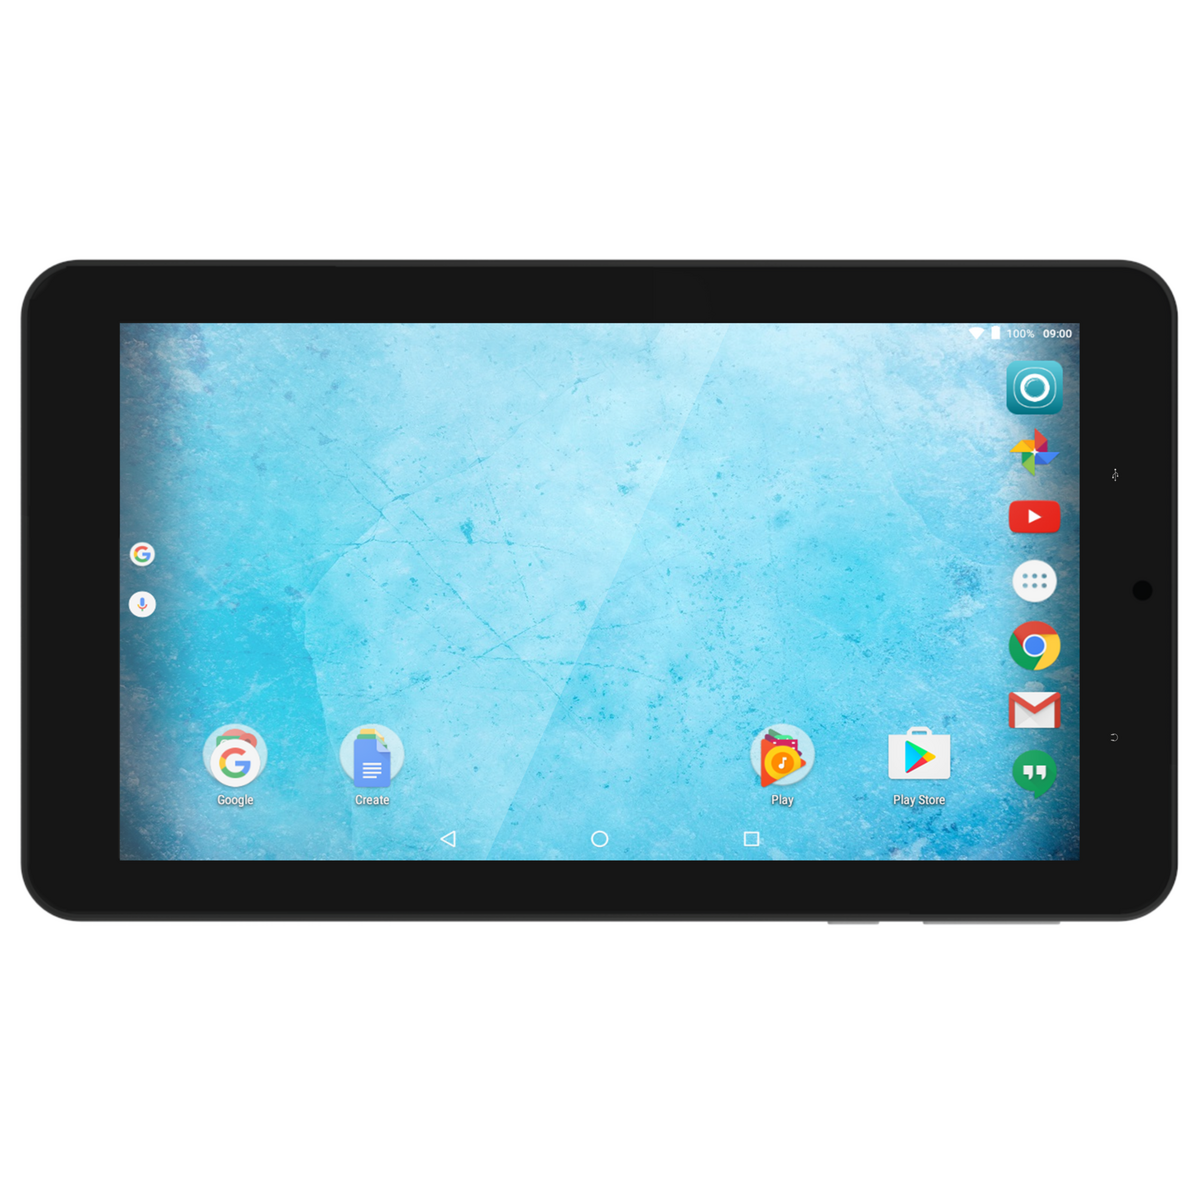 Q8 Tablet pour les enfants, tablette Android 7 pouces avec Wifi